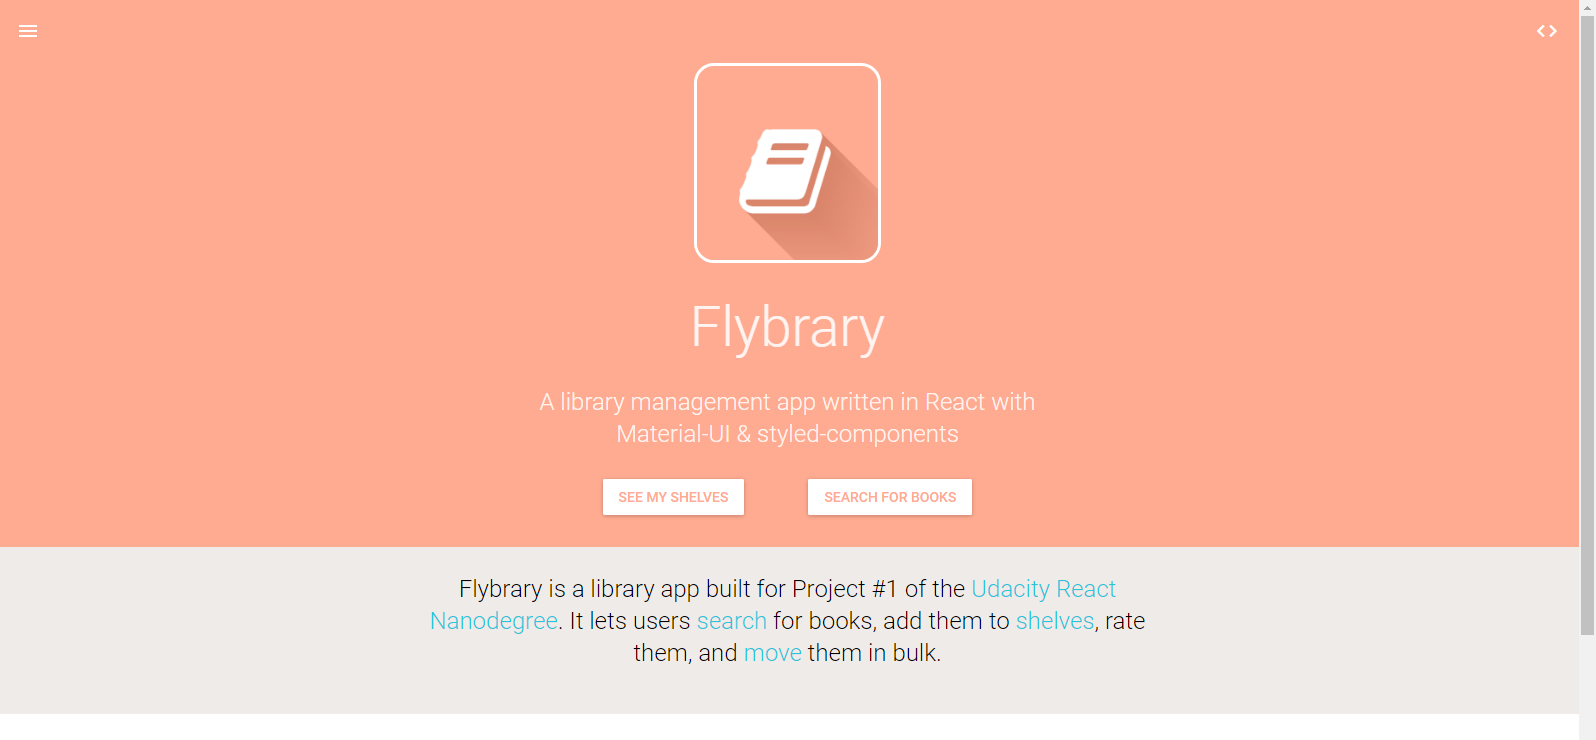 Flybrary